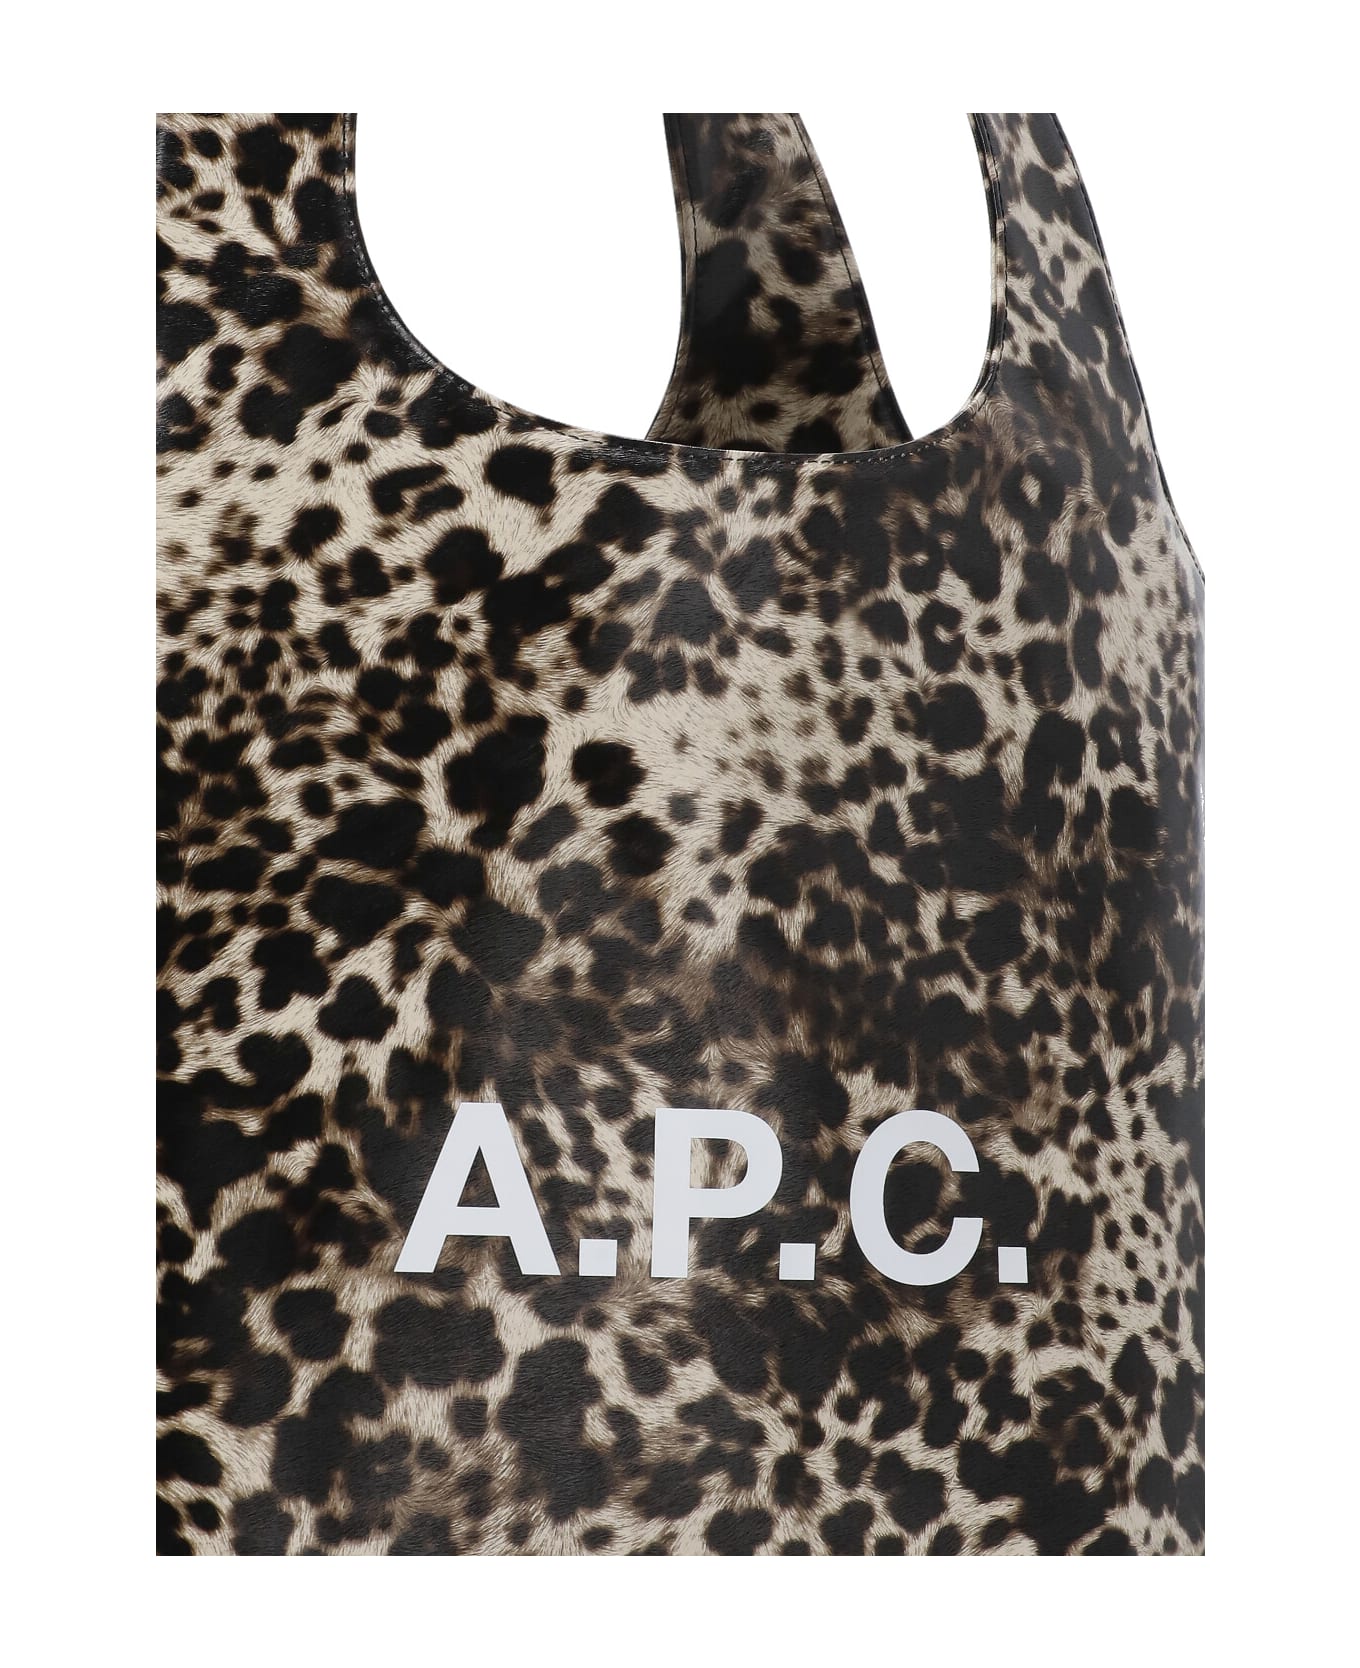 A.P.C. Ninon Tote Bag - MultiColour